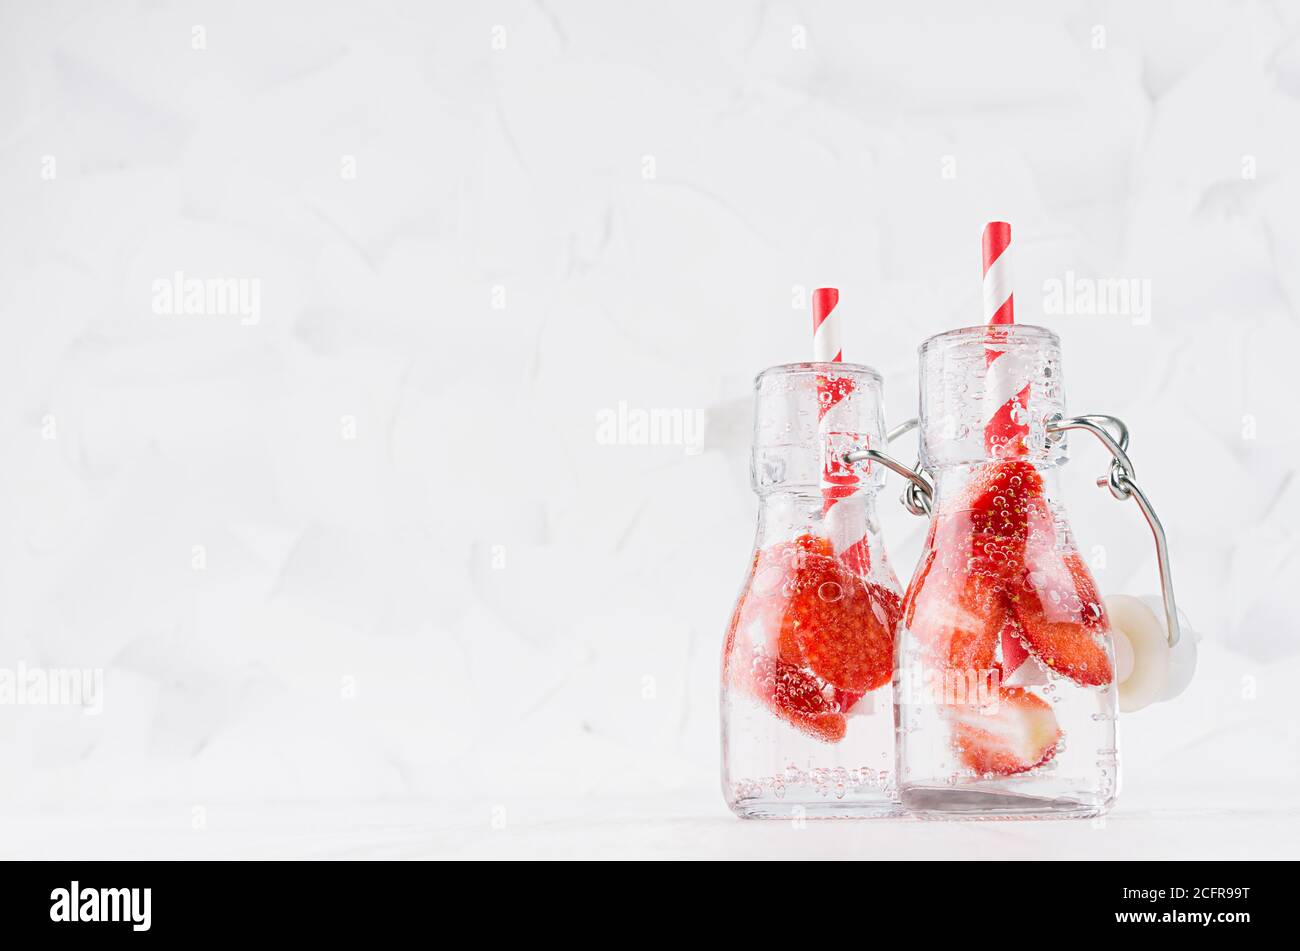 Frische Erdbeer-Limonaden mit geschnittener Beere, Sodawasser, Stroh in durchsichtigen Joch-Flaschen auf weichem hellweißem Holztisch, Kopierraum. Stockfoto